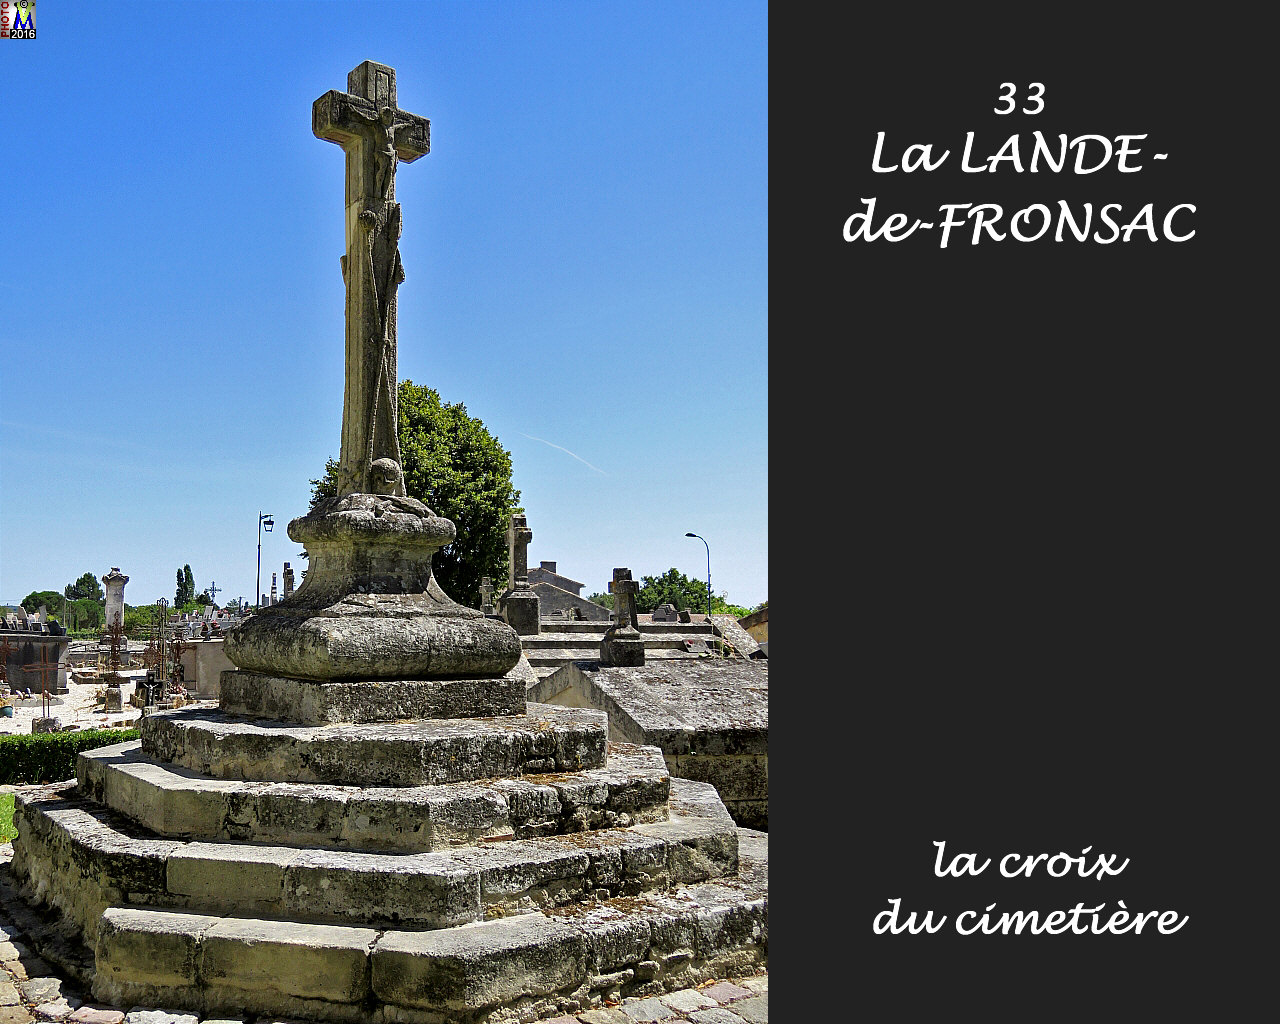 33LANDE-FRONSAC_croix_1000.jpg